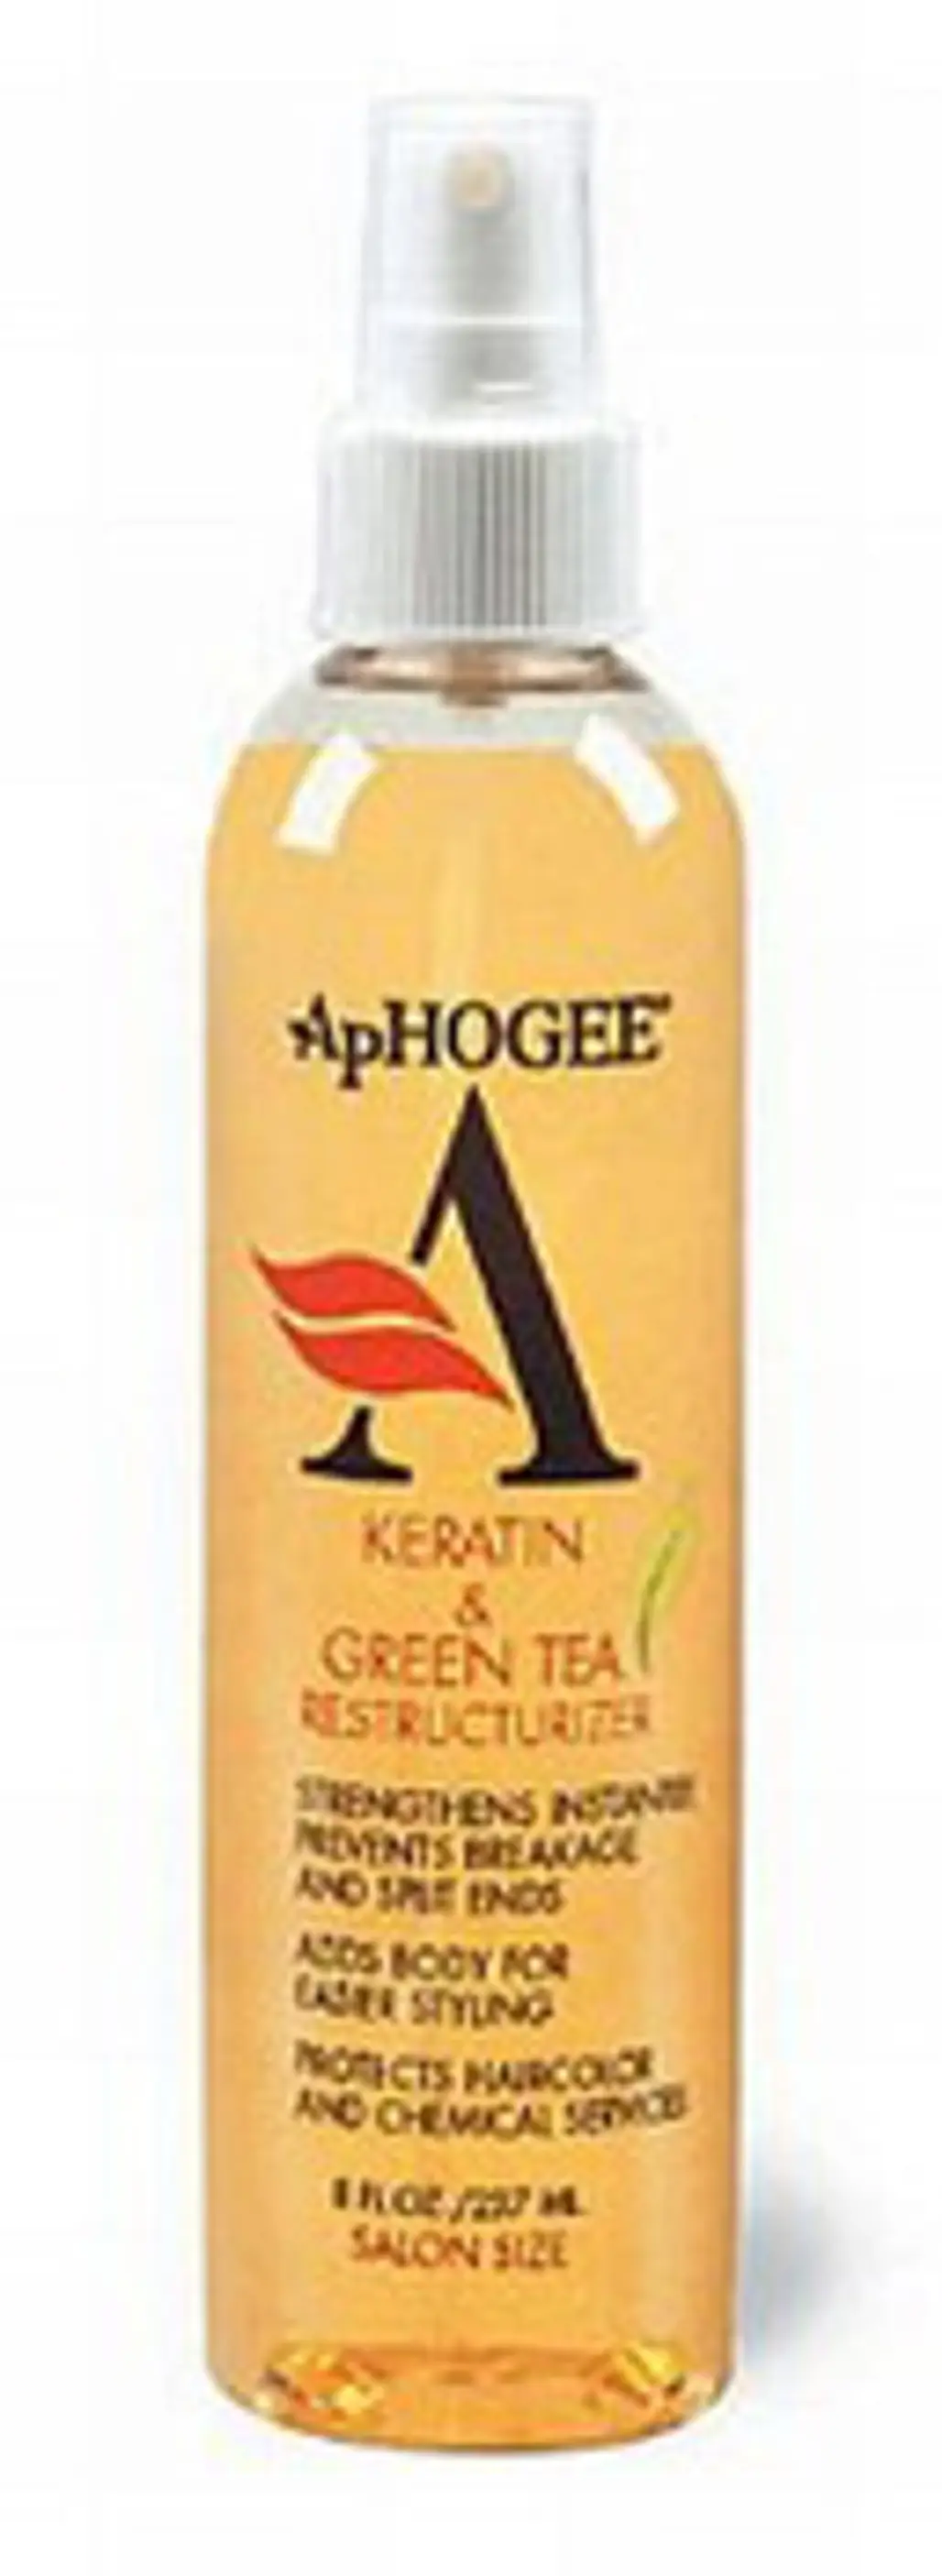 Aphogee Keratin and Green Tea Spray